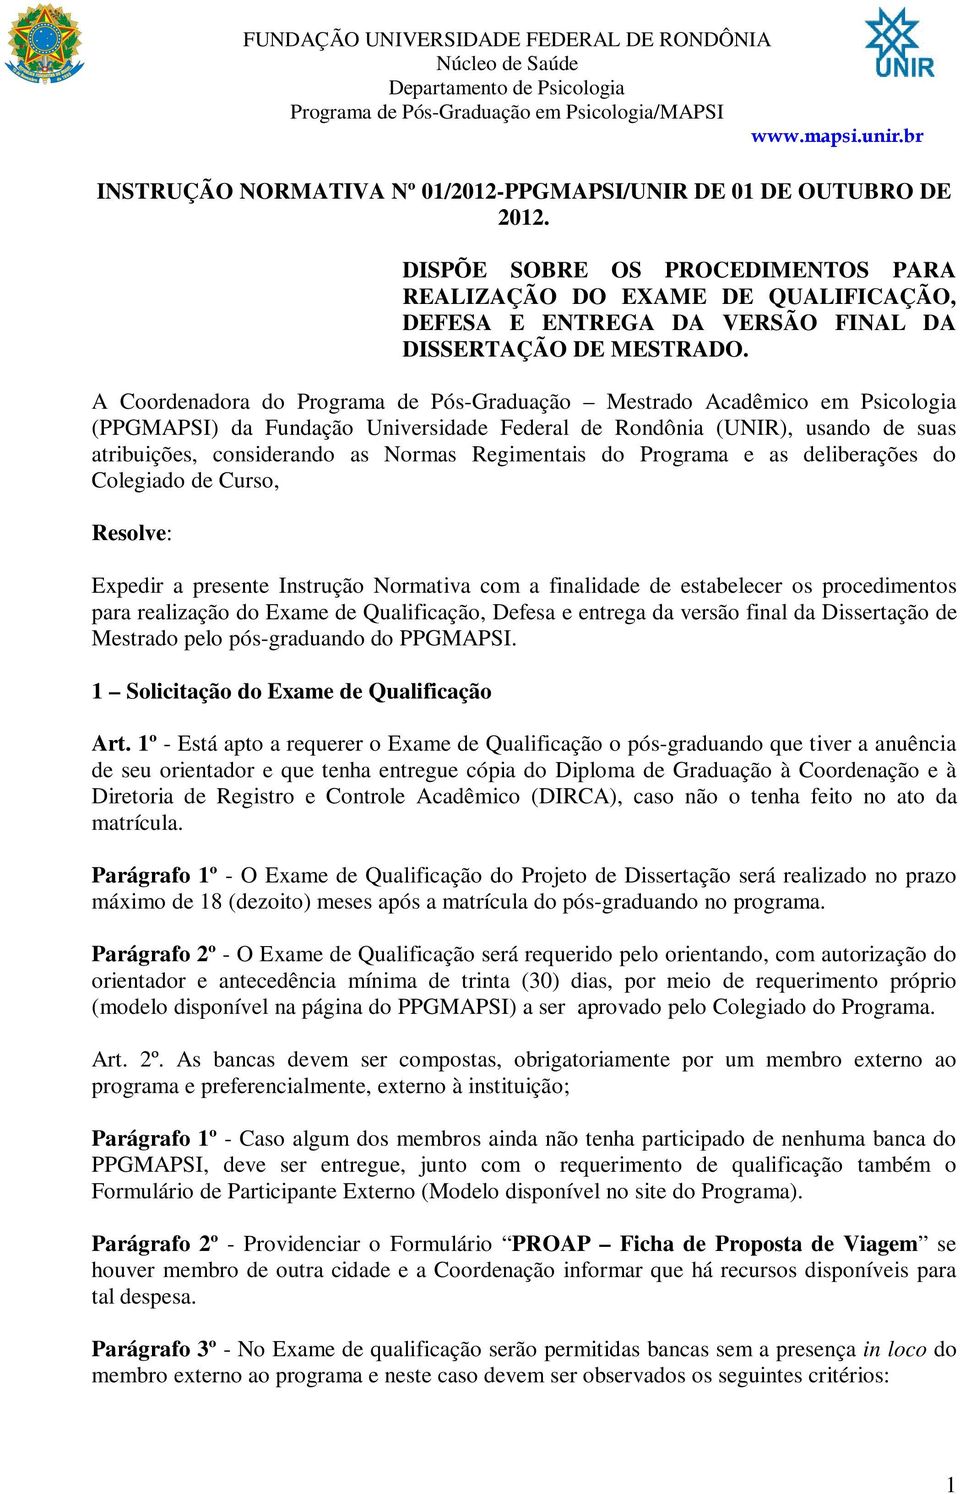 A Coordenadora do Programa de Pós-Graduação Mestrado Acadêmico em Psicologia (PPGMAPSI) da Fundação Universidade Federal de Rondônia (UNIR), usando de suas atribuições, considerando as Normas